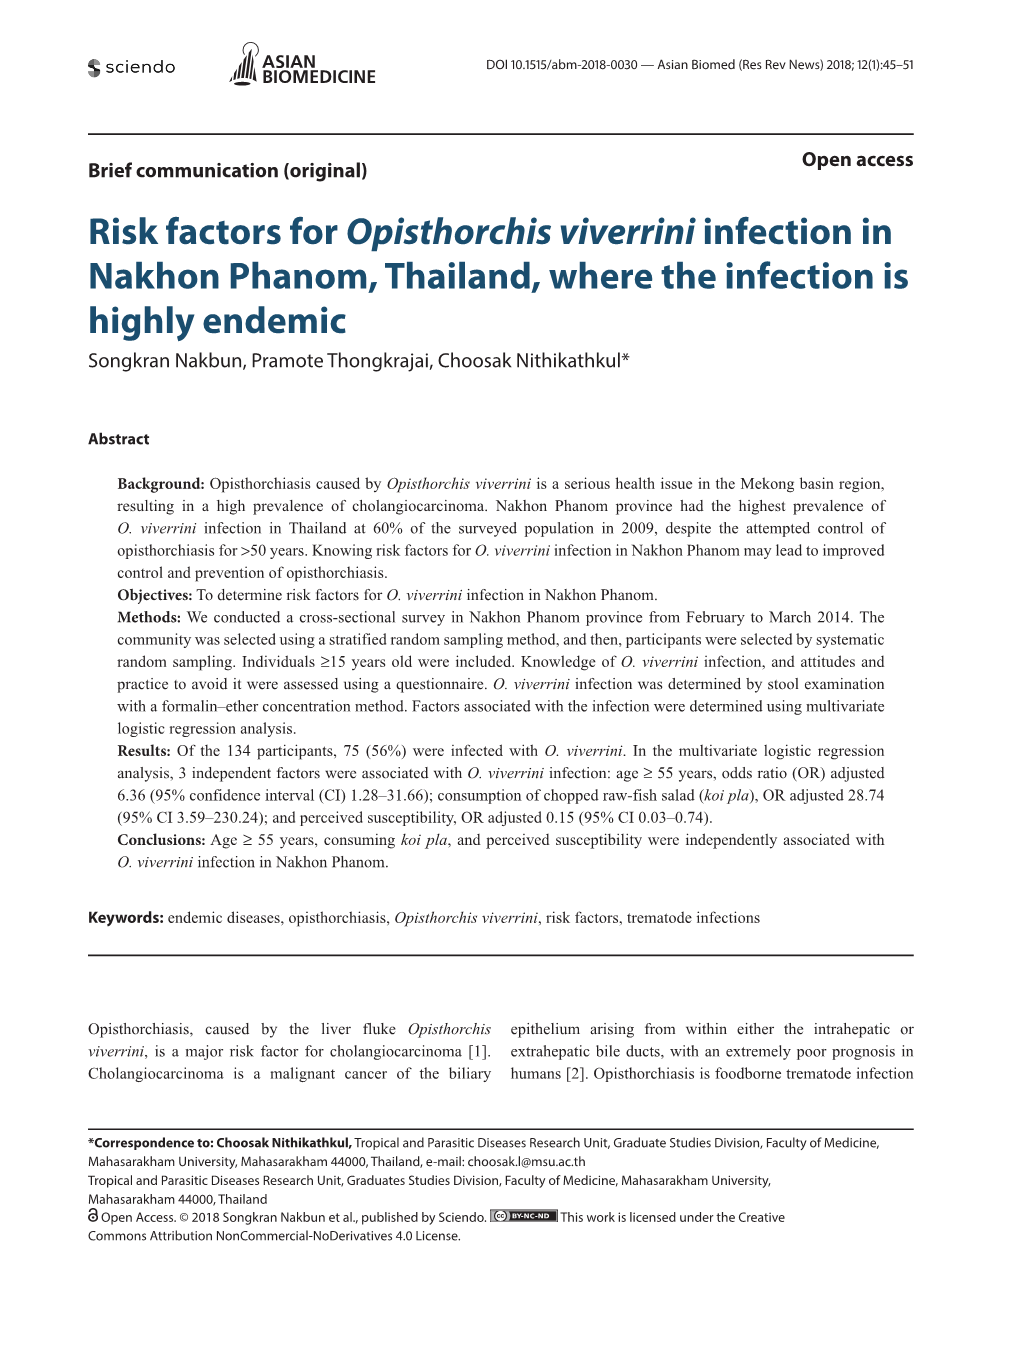 Risk Factors for Opisthorchis Viverrini Infection in Nakhon Phanom